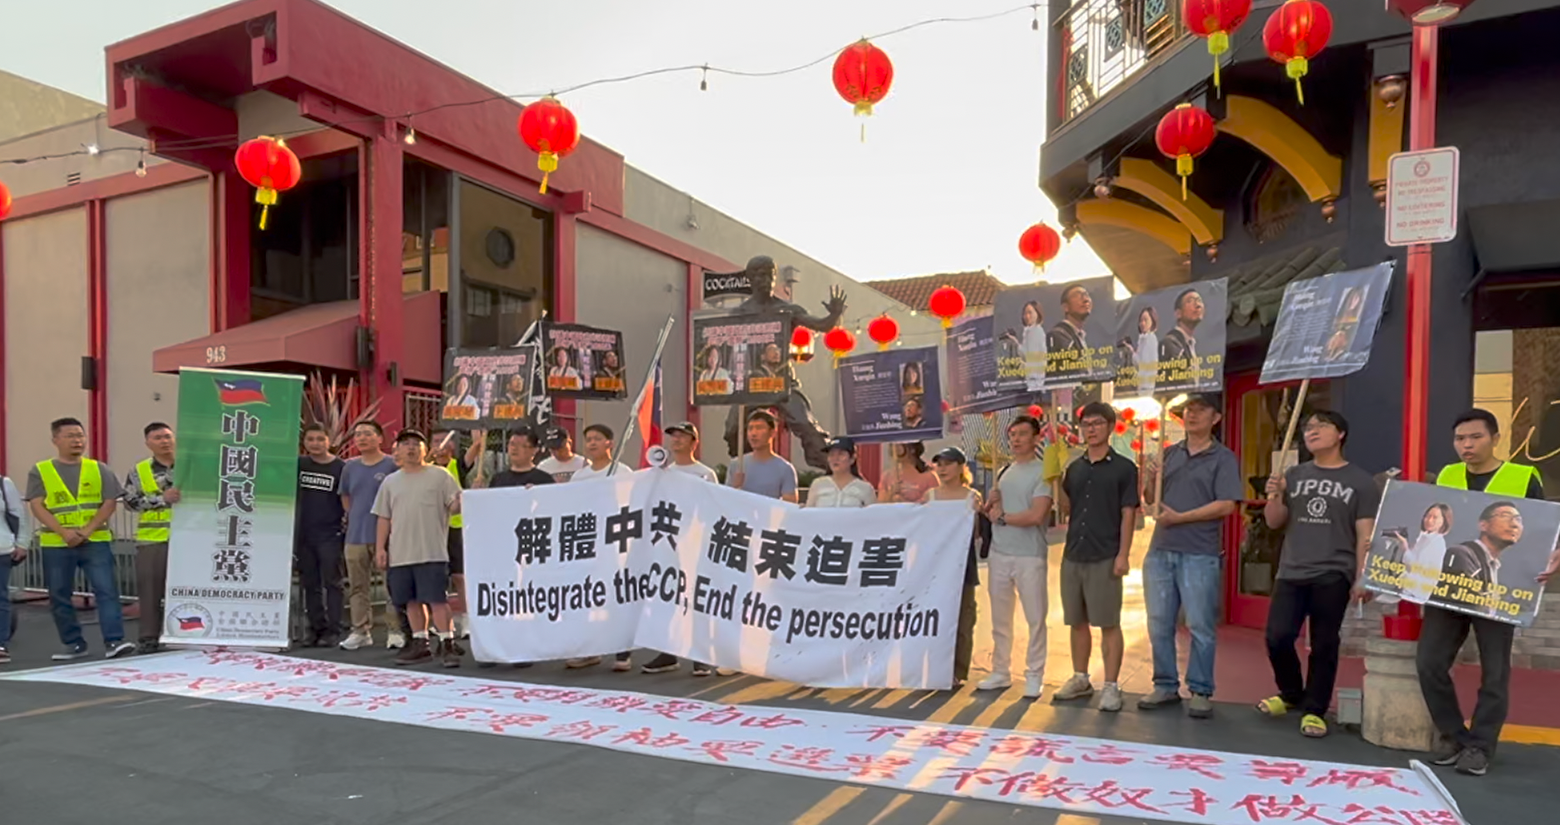 黃雪琴王建兵遭中共判刑 洛杉磯華人集會抗議